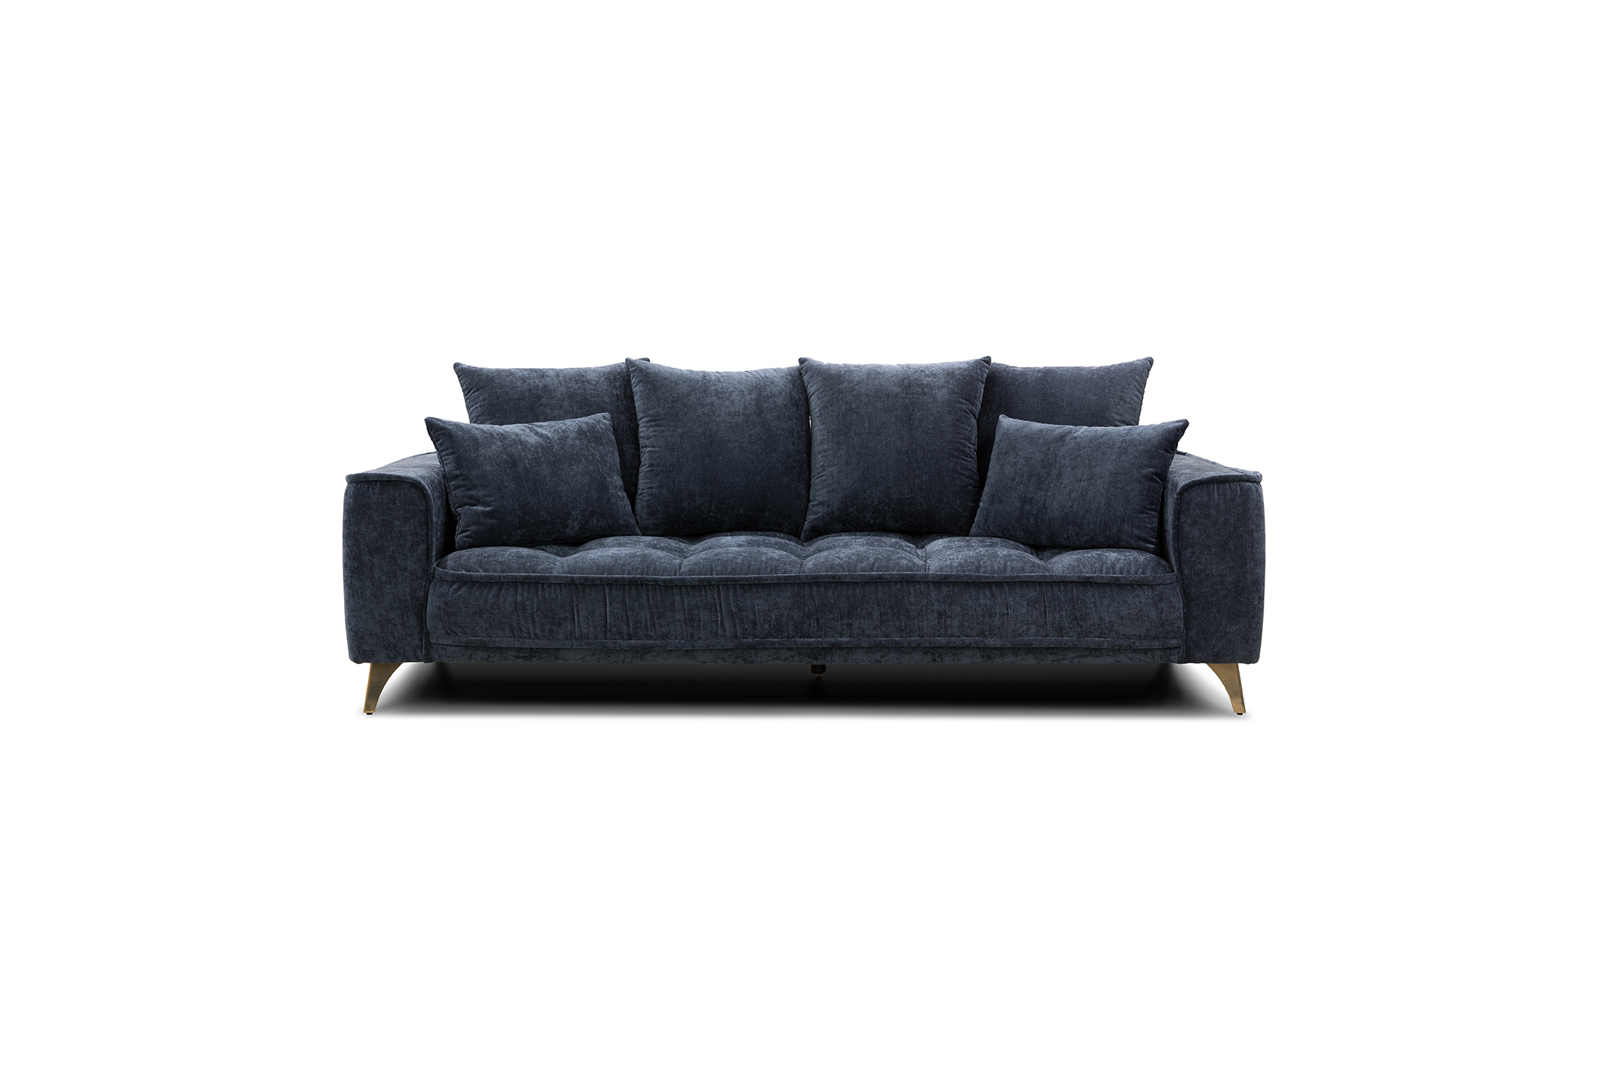 Belavio 3 seater sofa